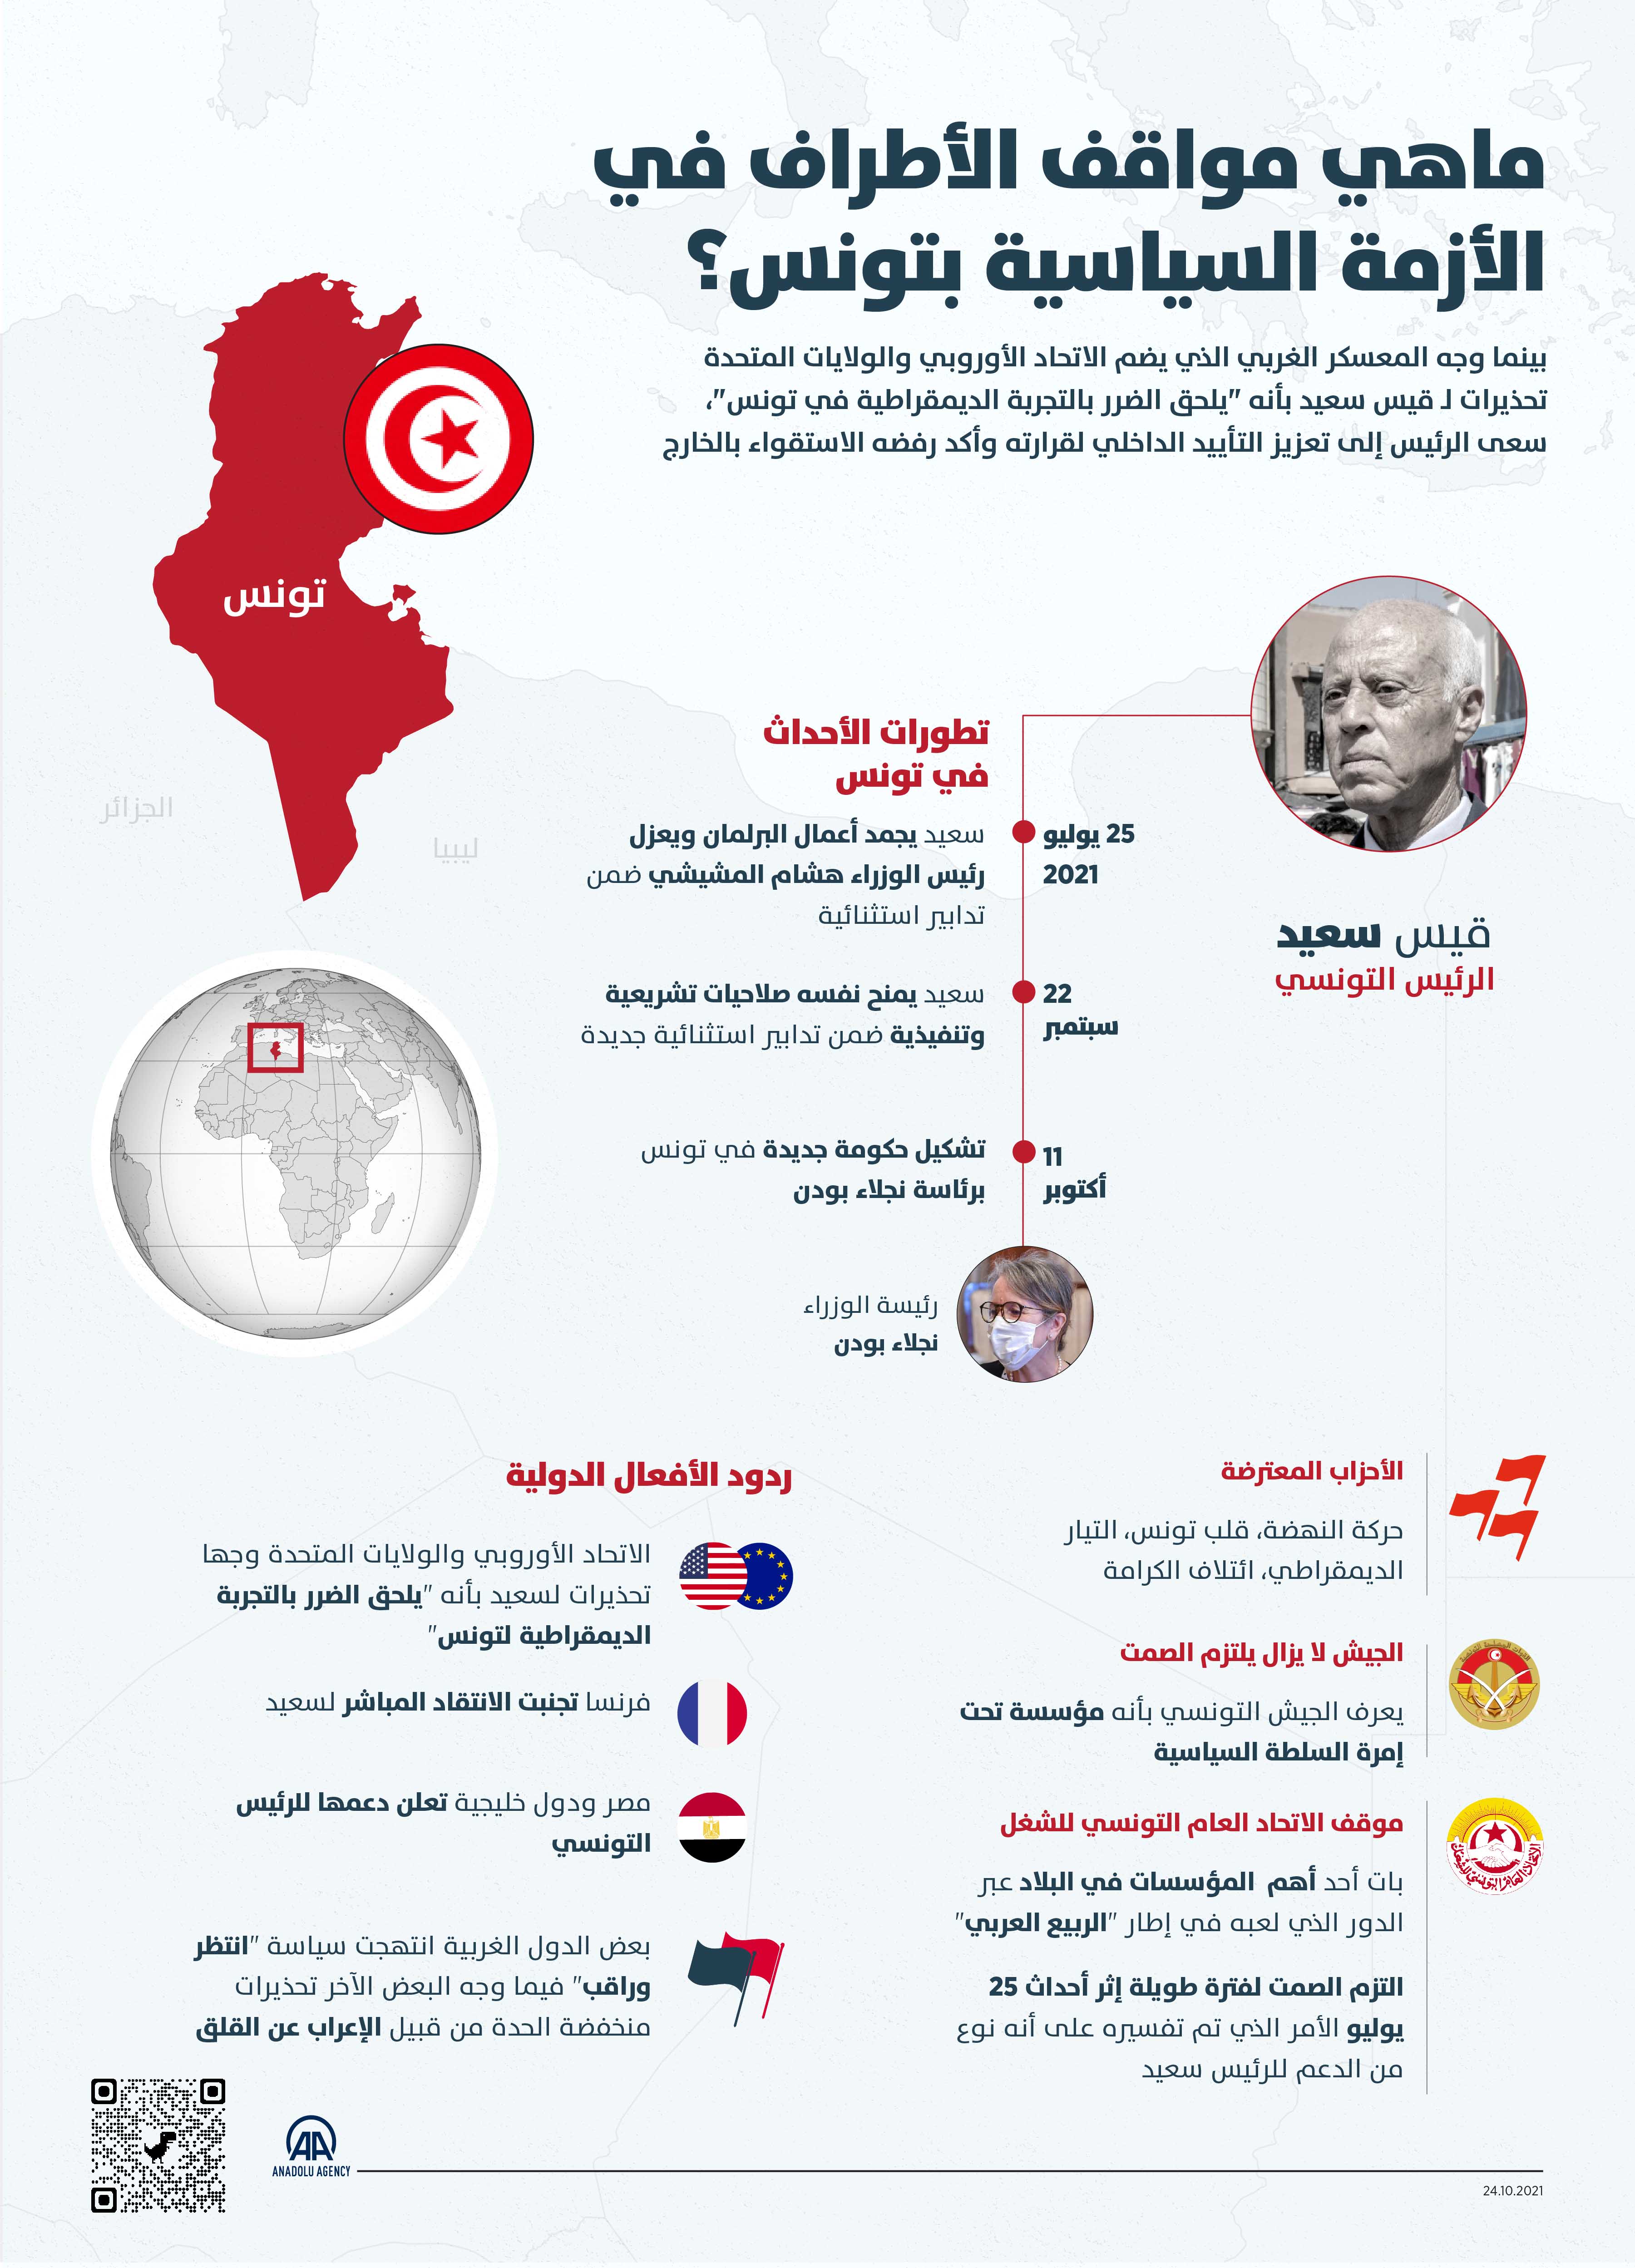 ماهي مواقف الأطراف في الأزمة السياسية بتونس؟